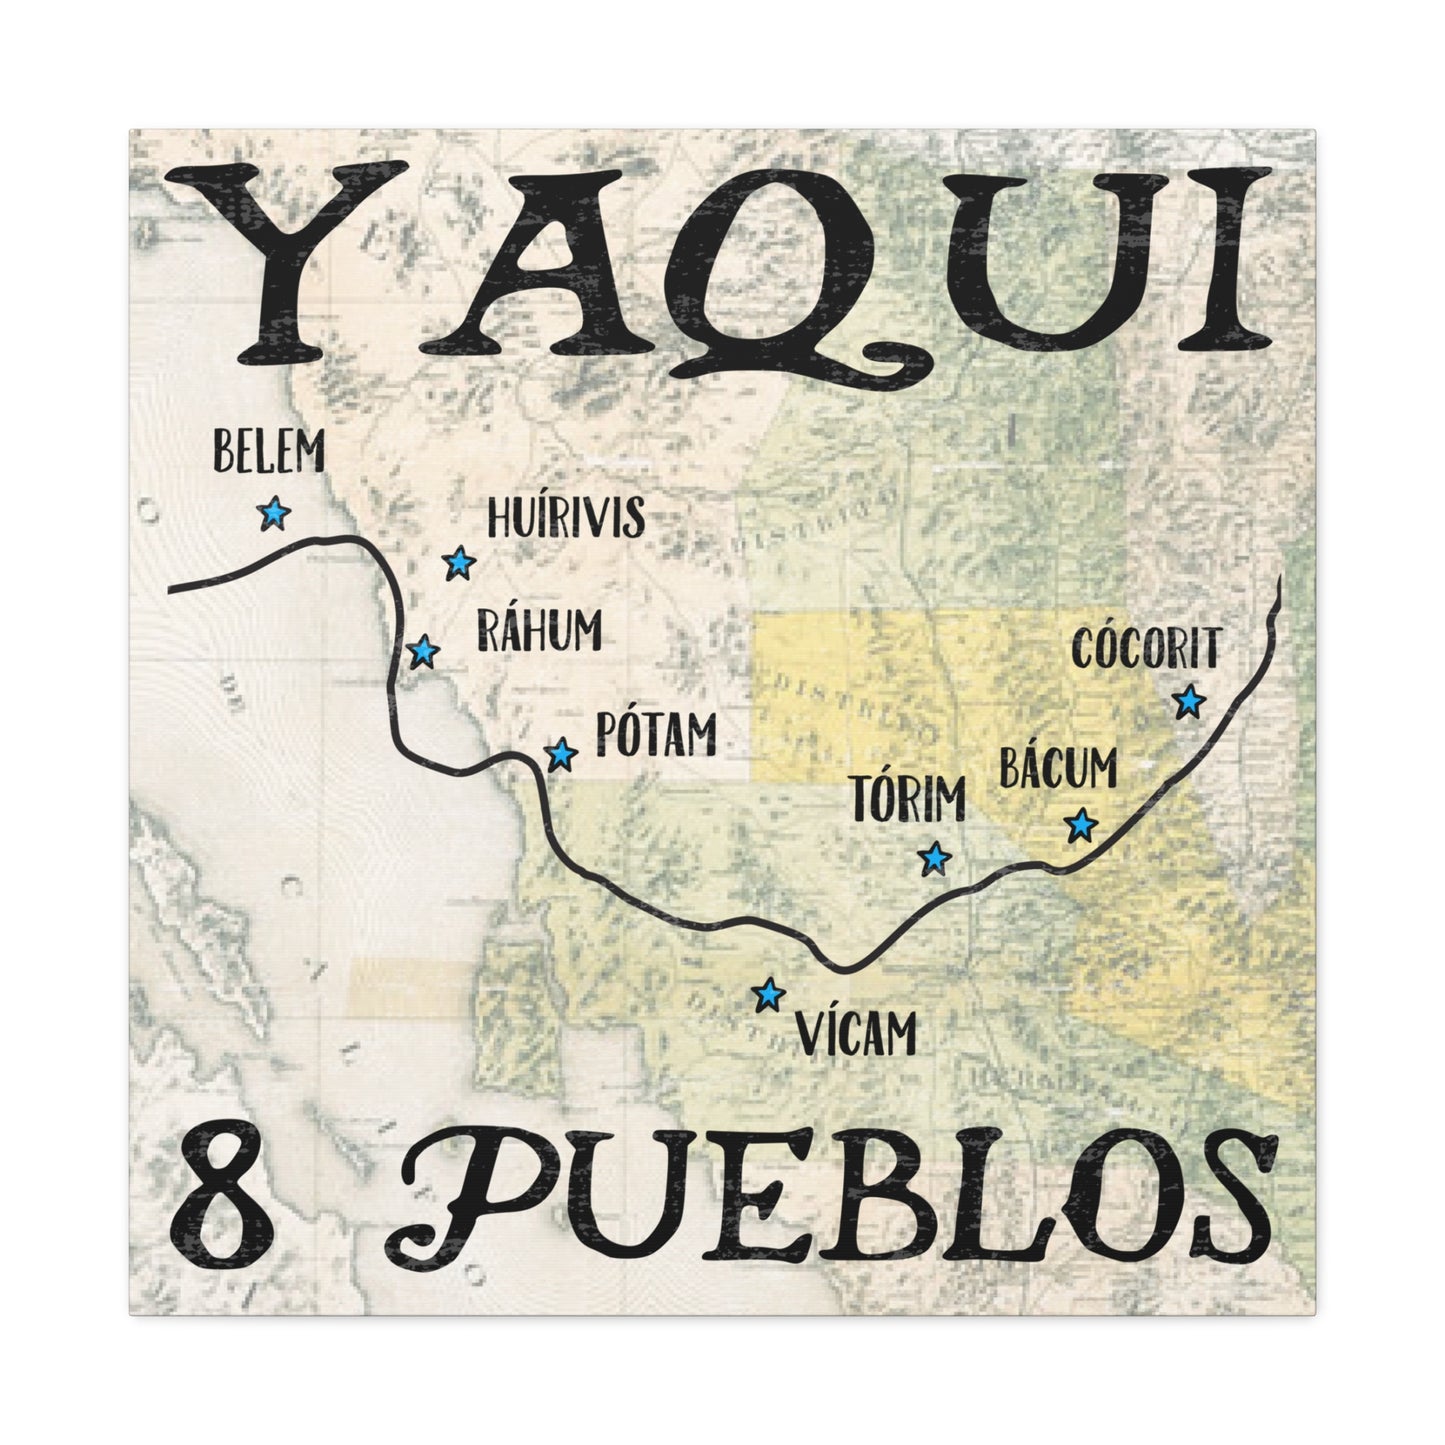 Обертка для галереи холста Yaqui Pueblos, 30 x 30 дюймов, коренные американцы